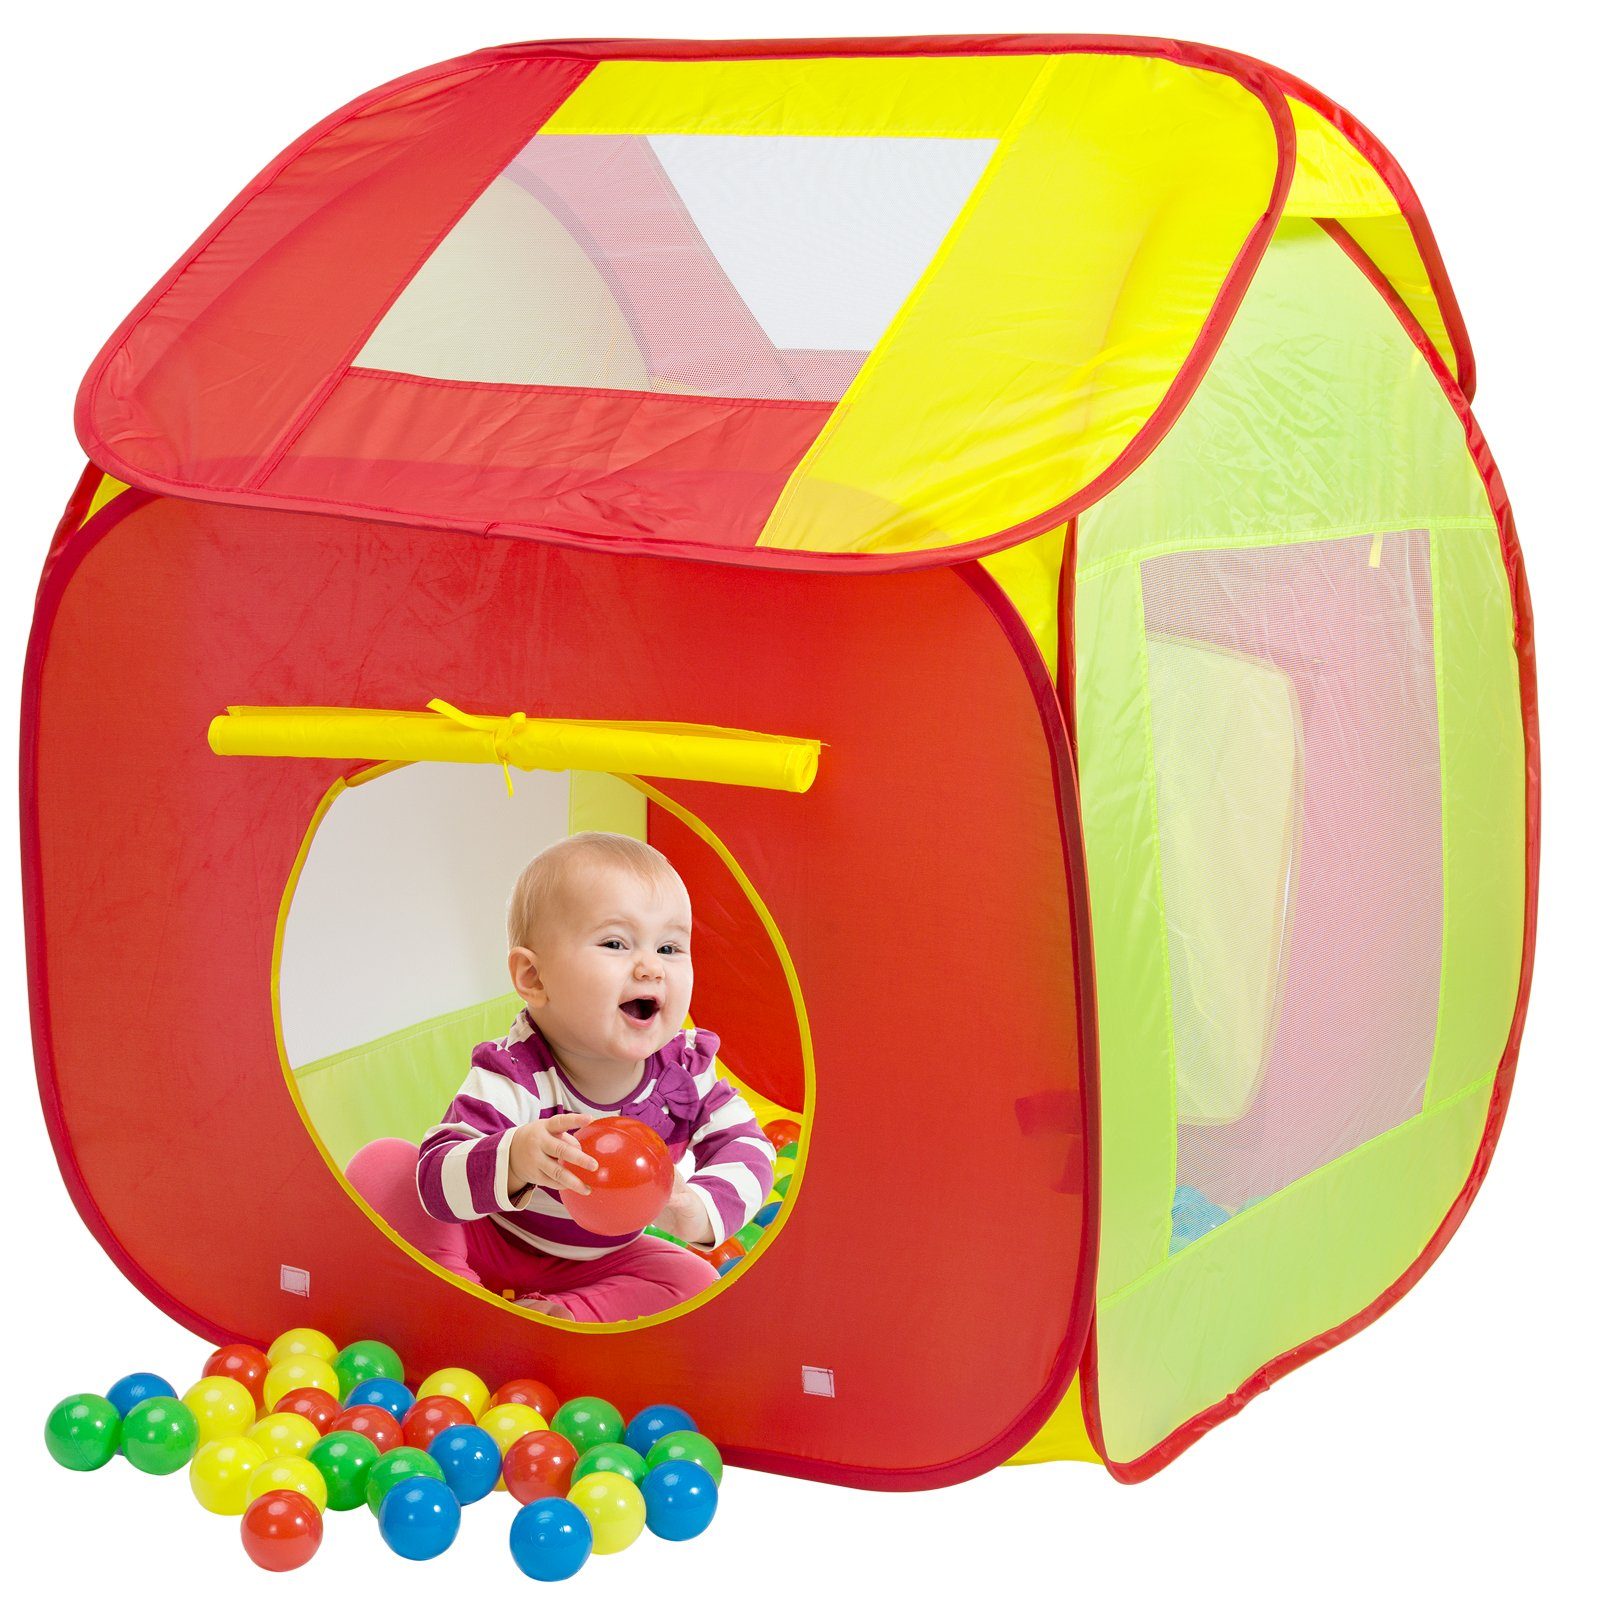 Spielwerk Spielzelt (202-tlg) Pop Up Funktion inkl. 200 Bälle Tragetasche Kinderzimmer Kinder